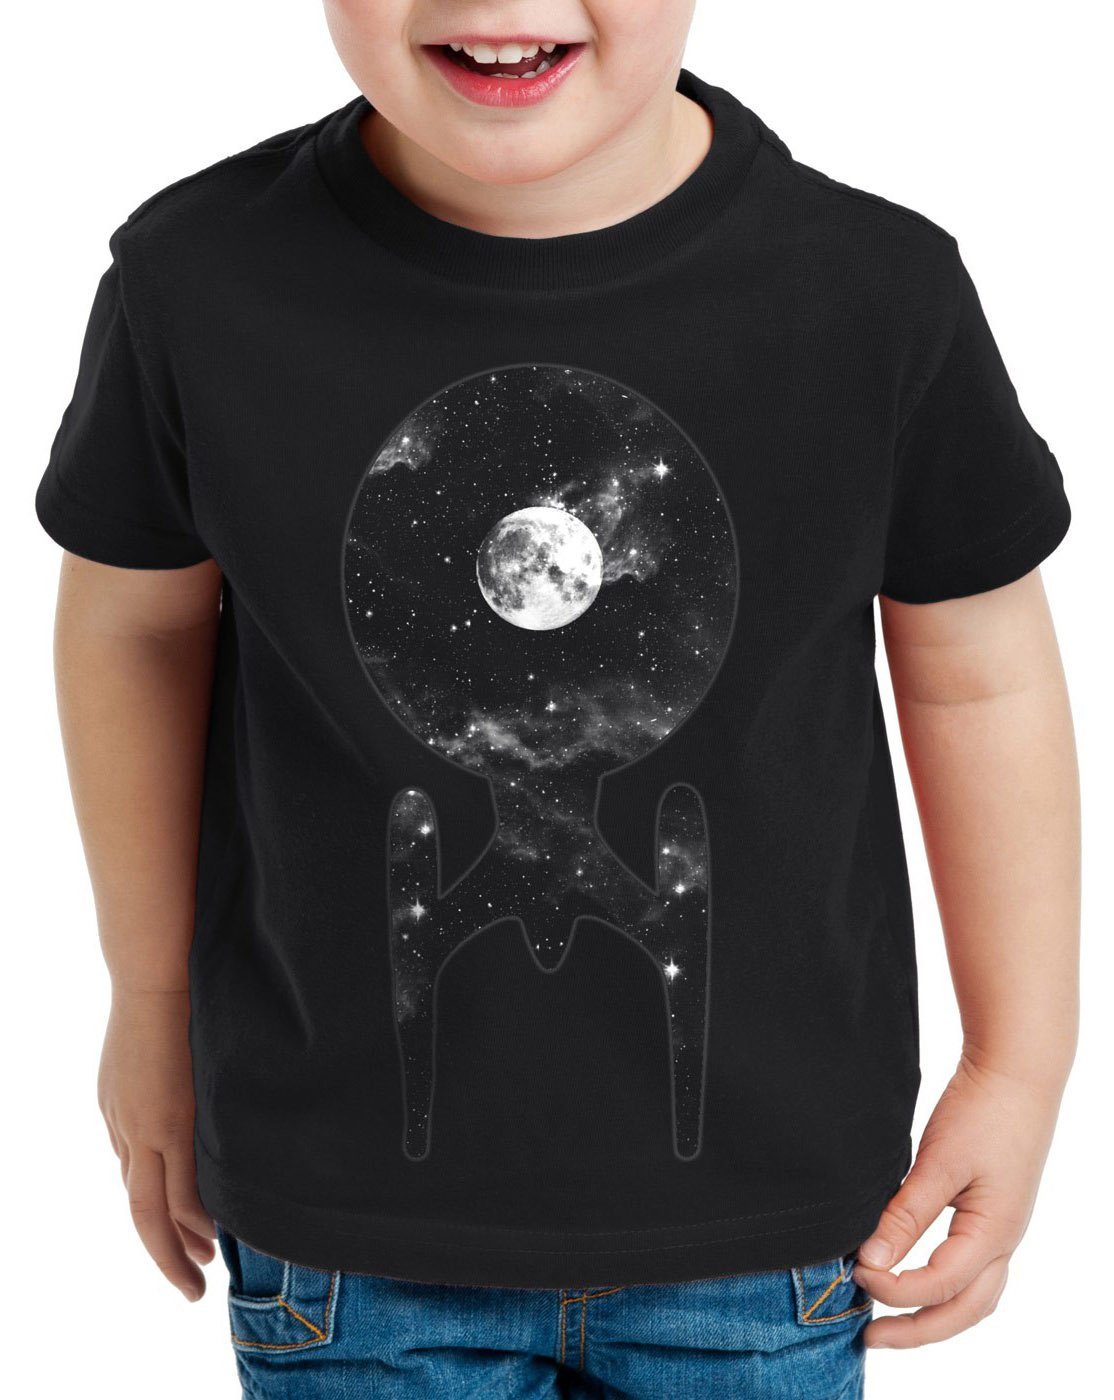 style3 Print-Shirt Kinder T-Shirt Trek Raumschiff trekkie star schwarz